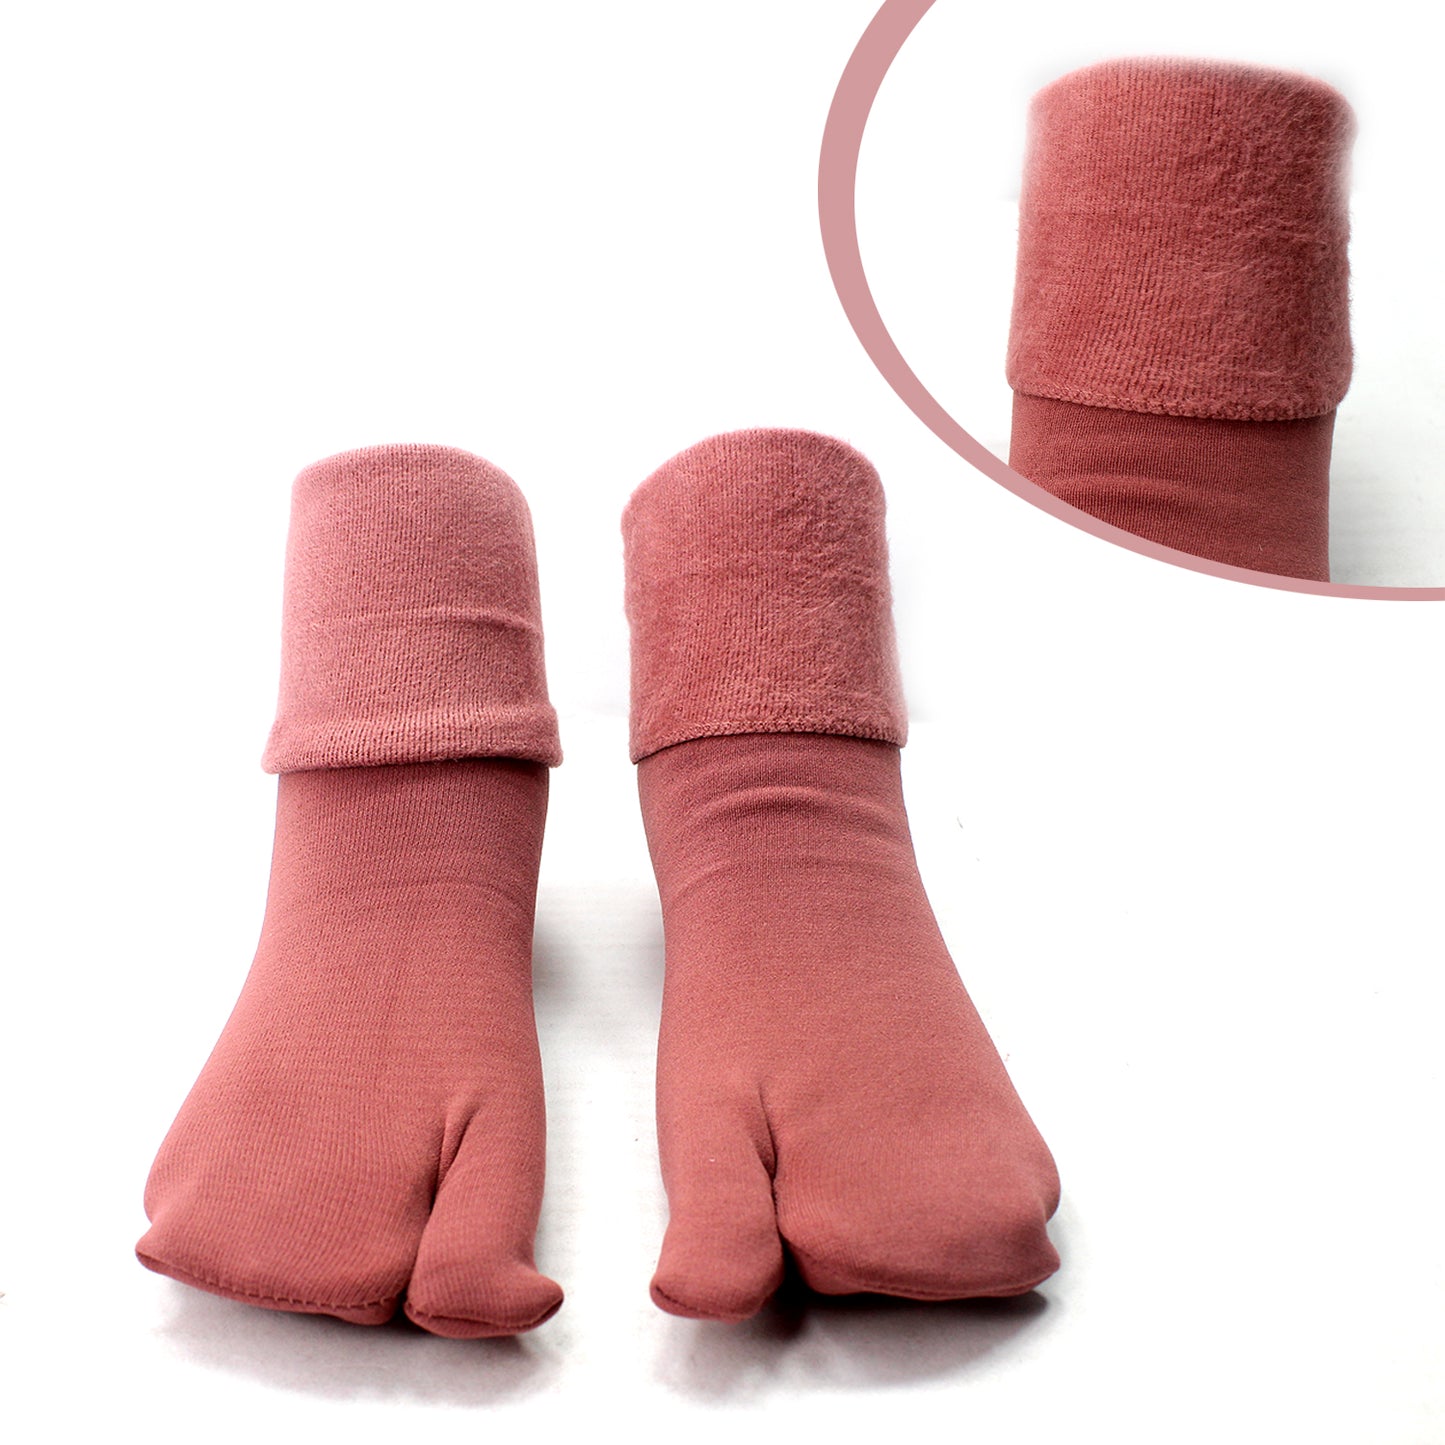 Berry Warm Velvet Soft Socks Winter Thick Snow Thermal Socks